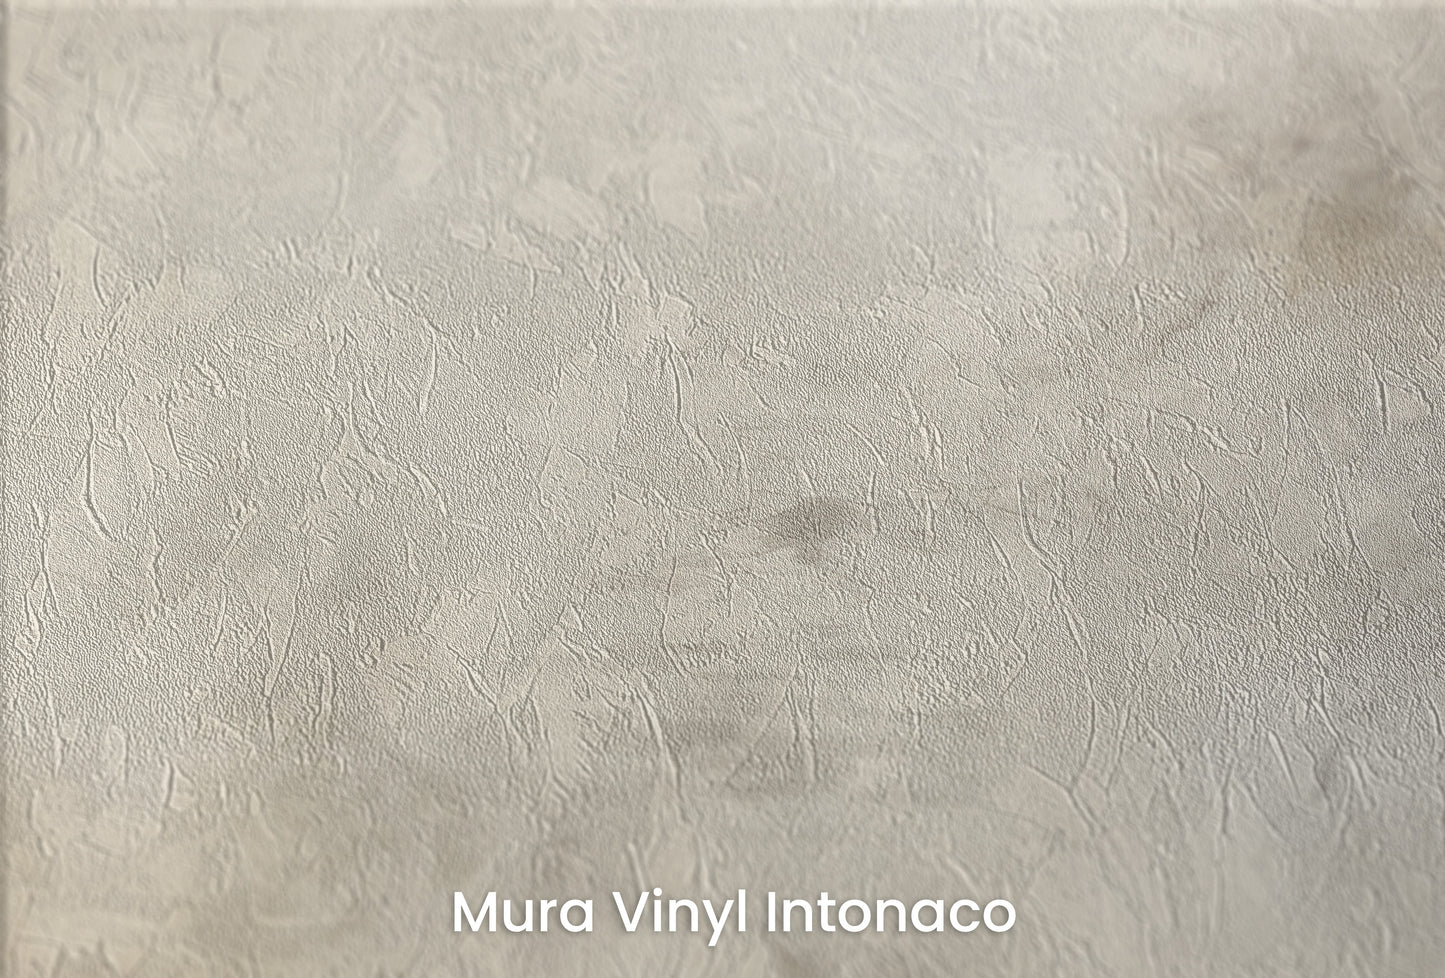 Zbliżenie na artystyczną fototapetę o nazwie WHISPERING CLOUD WALTZ na podłożu Mura Vinyl Intonaco - struktura tartego tynku.